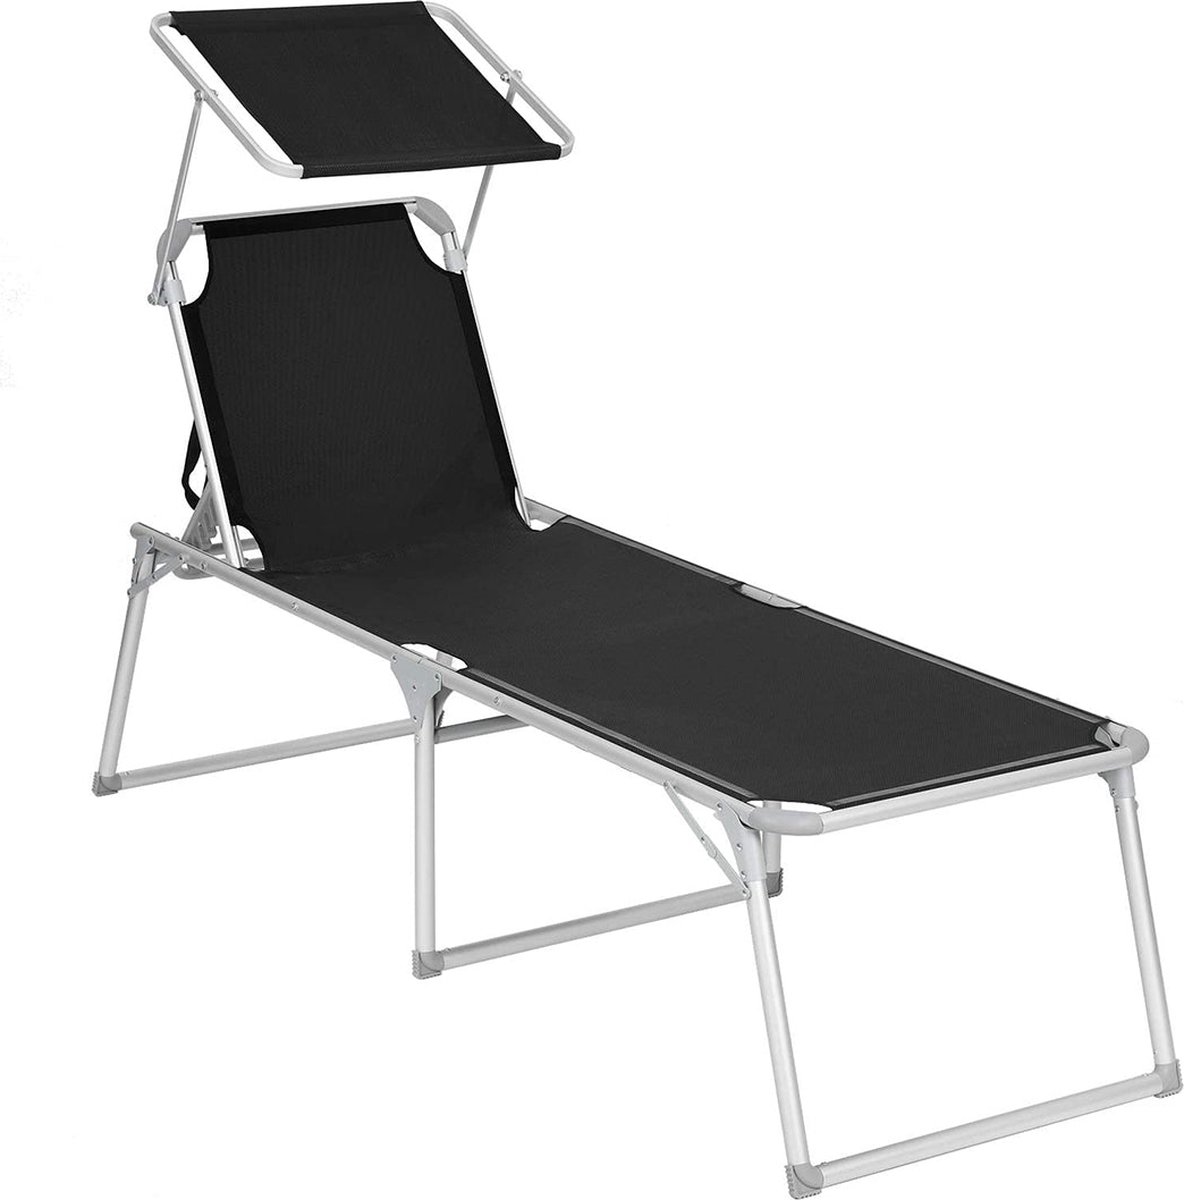 Ligstoel - Tuinligstoel - Extra groot 65 x 200 x 48 cm - Draagvermogen tot 150 kg - Met zonnekap - Rugleuning - Zwart